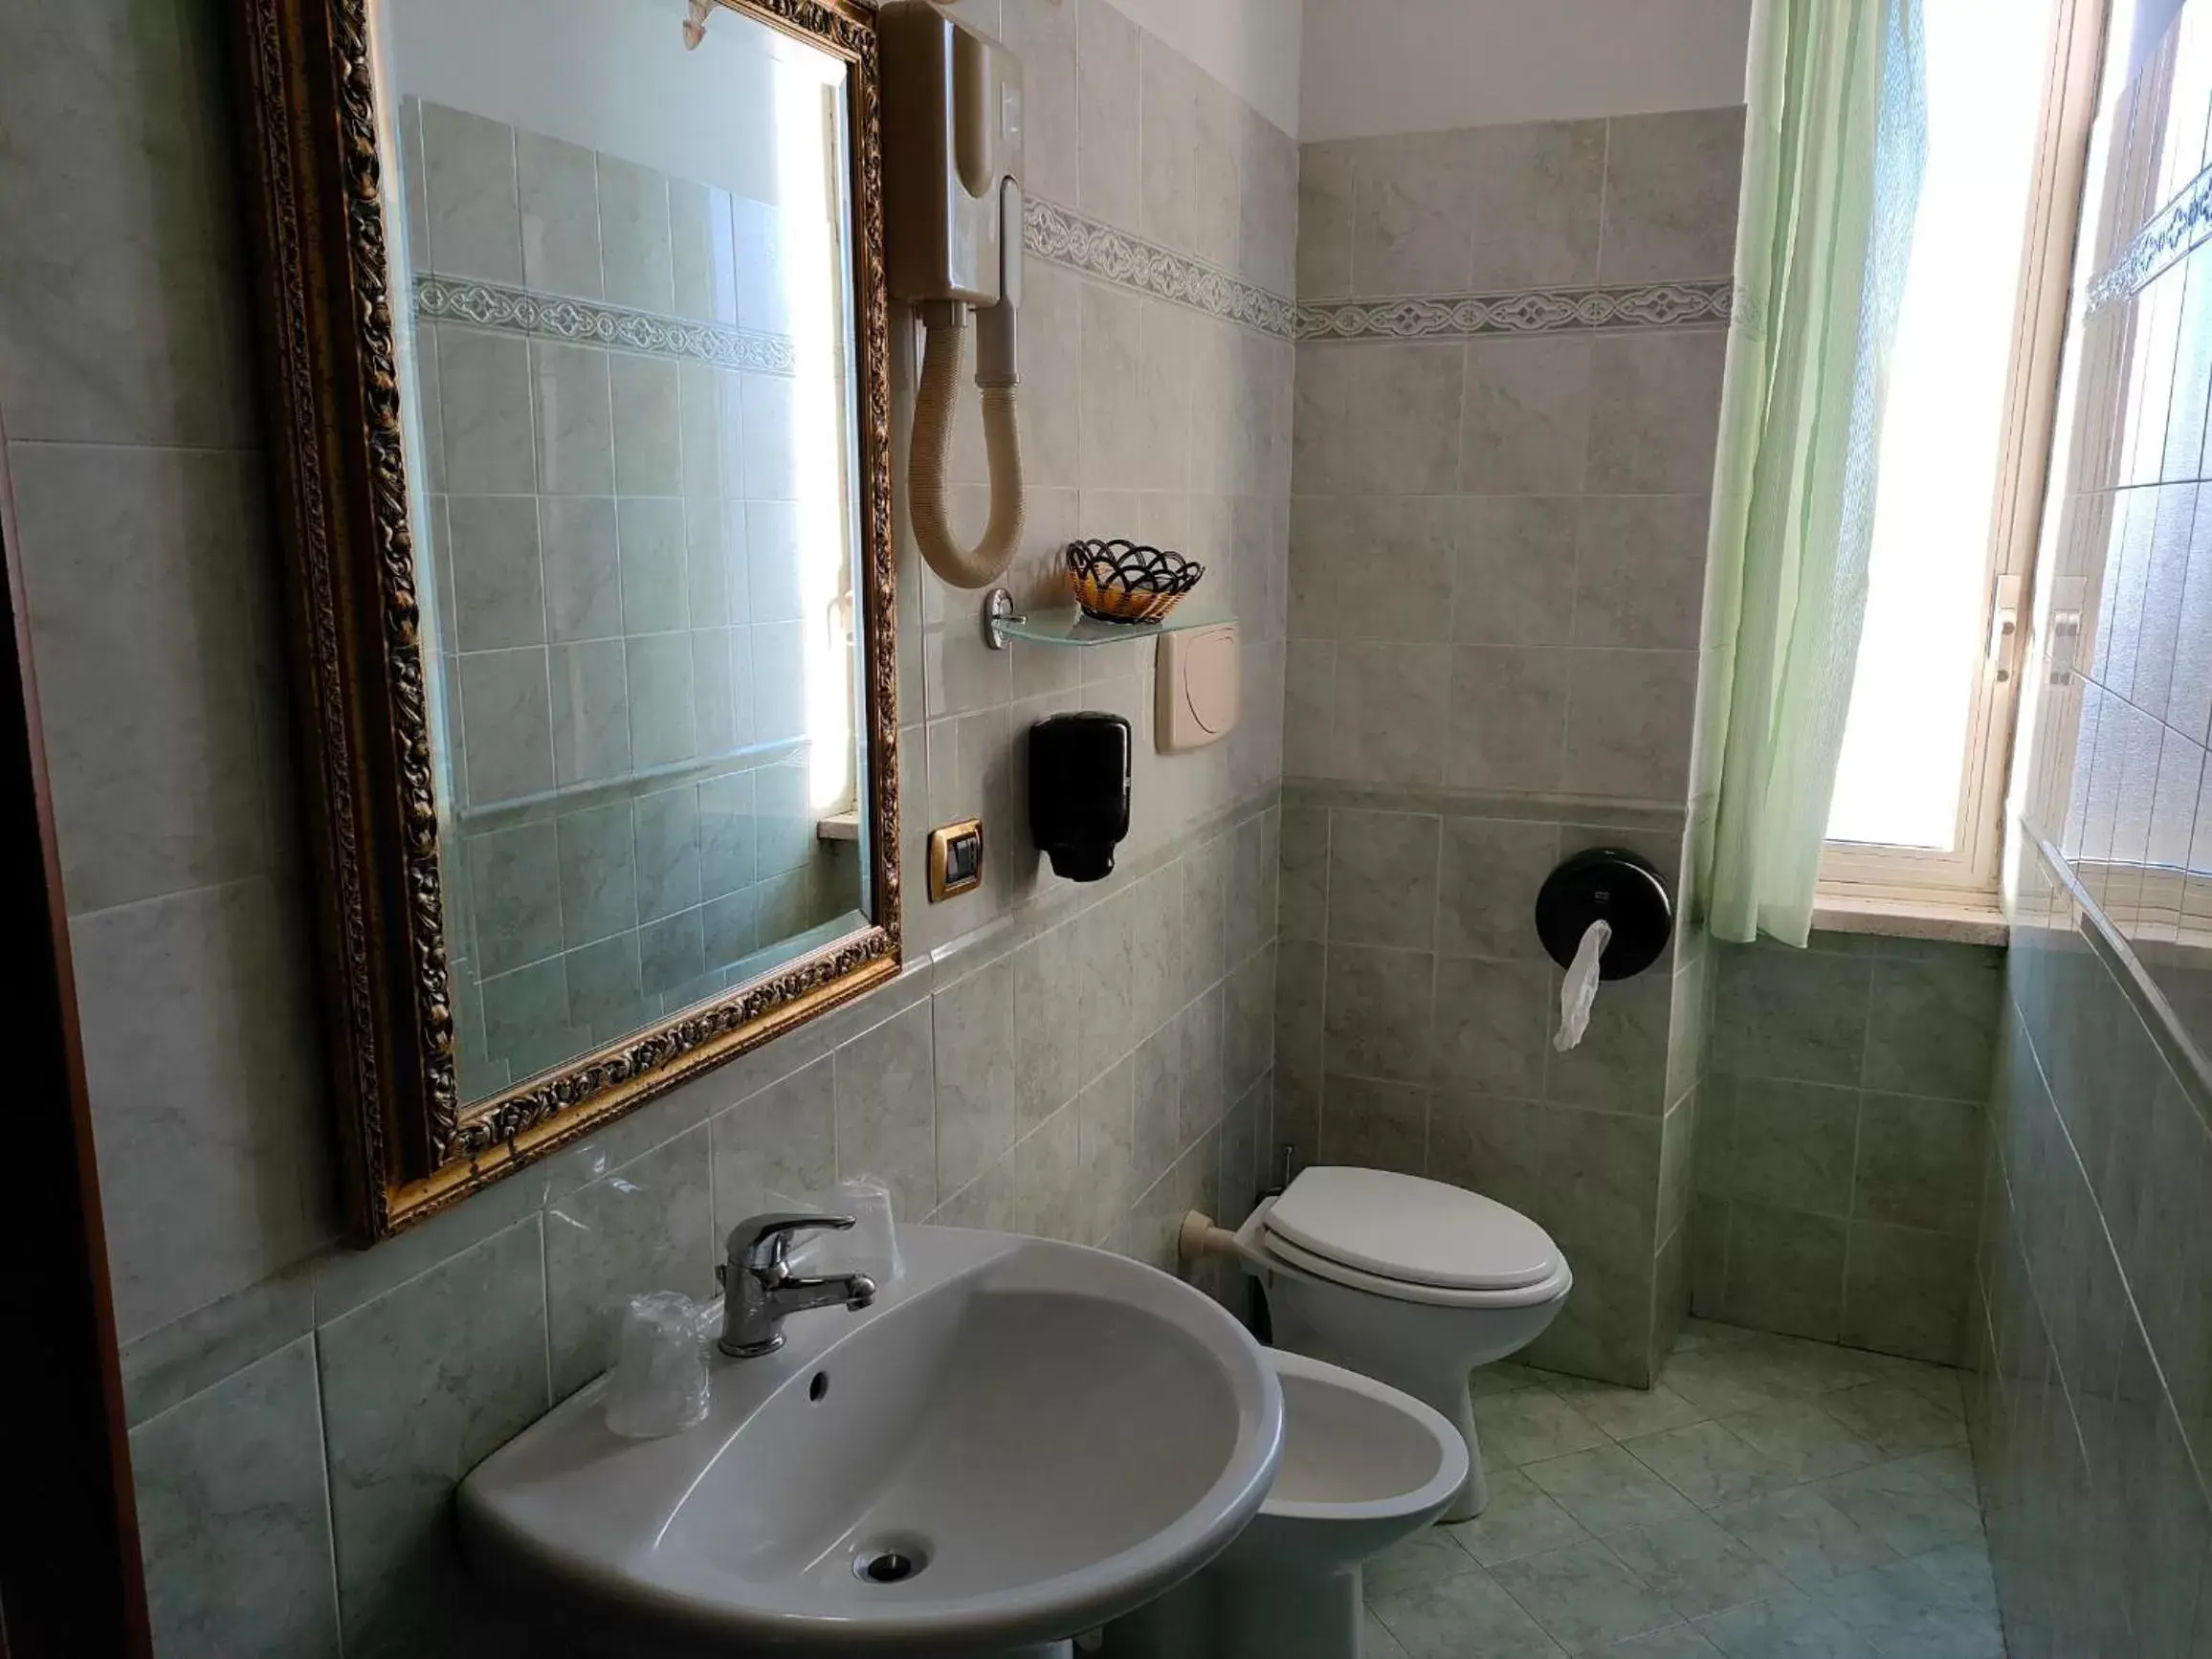 Bathroom in Hotel Parco Dei Principi